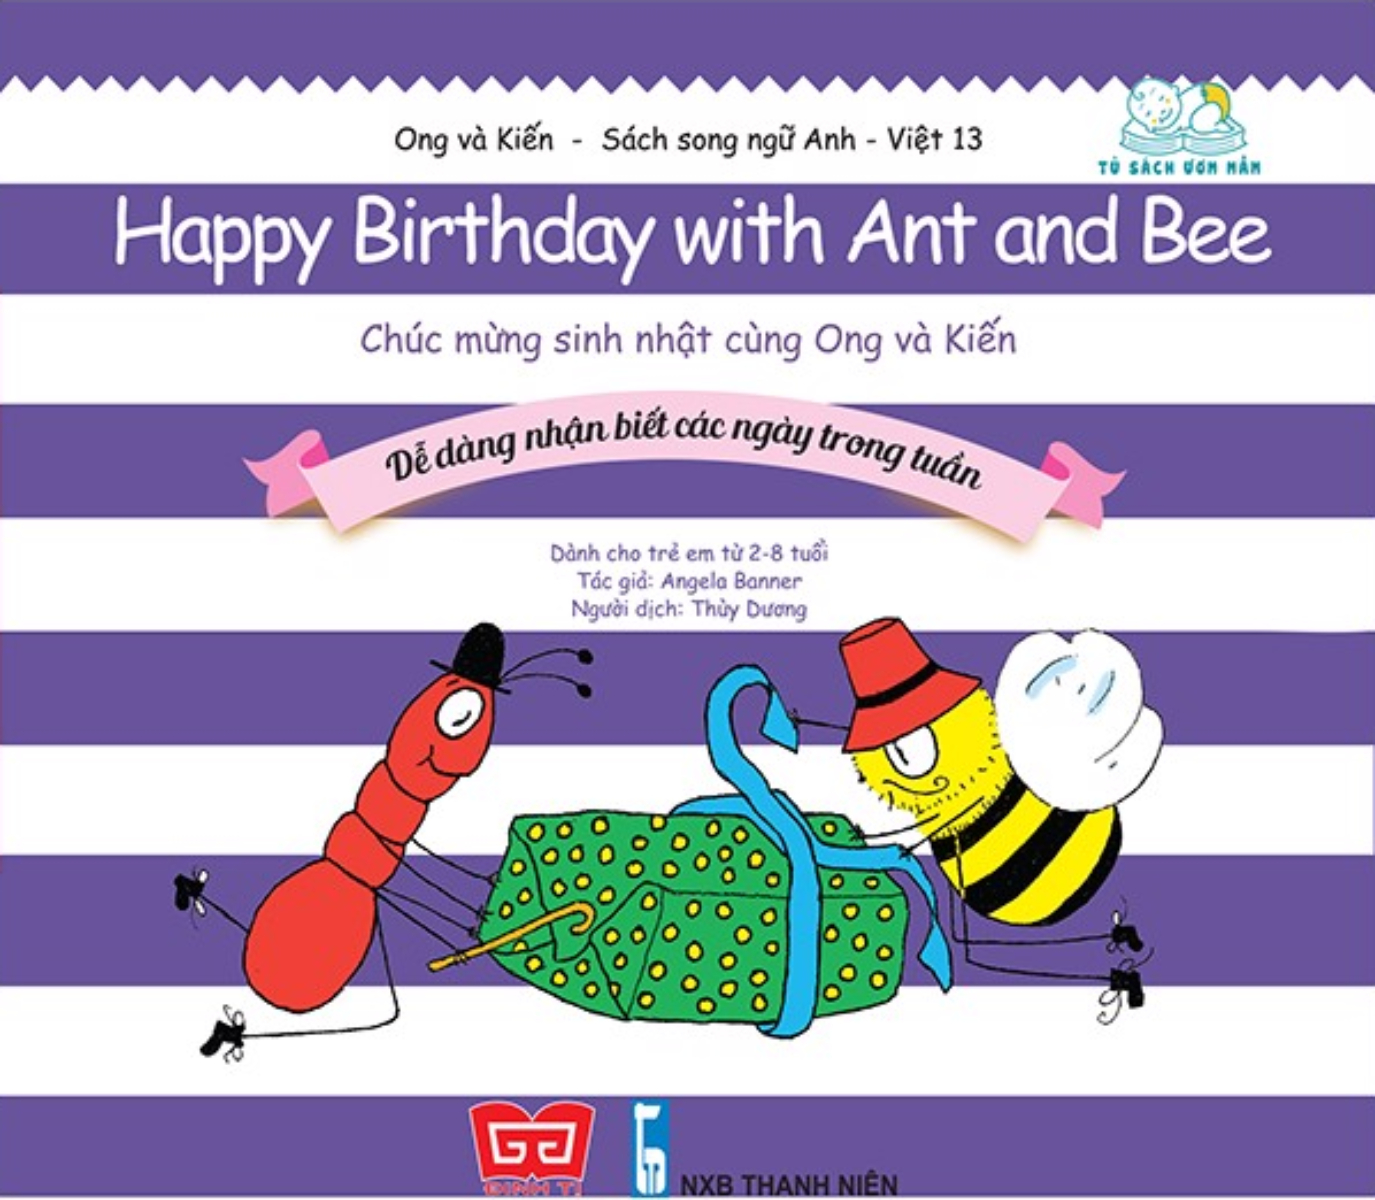 Ong Và Kiến - Tập 13 - Happy Birthday With Ant And Bee - Chúc Mừng Sinh Nhật Cùng Ong Và Kiến - Dễ Dàng Nhận Biết Các Ngày Trong Tuần